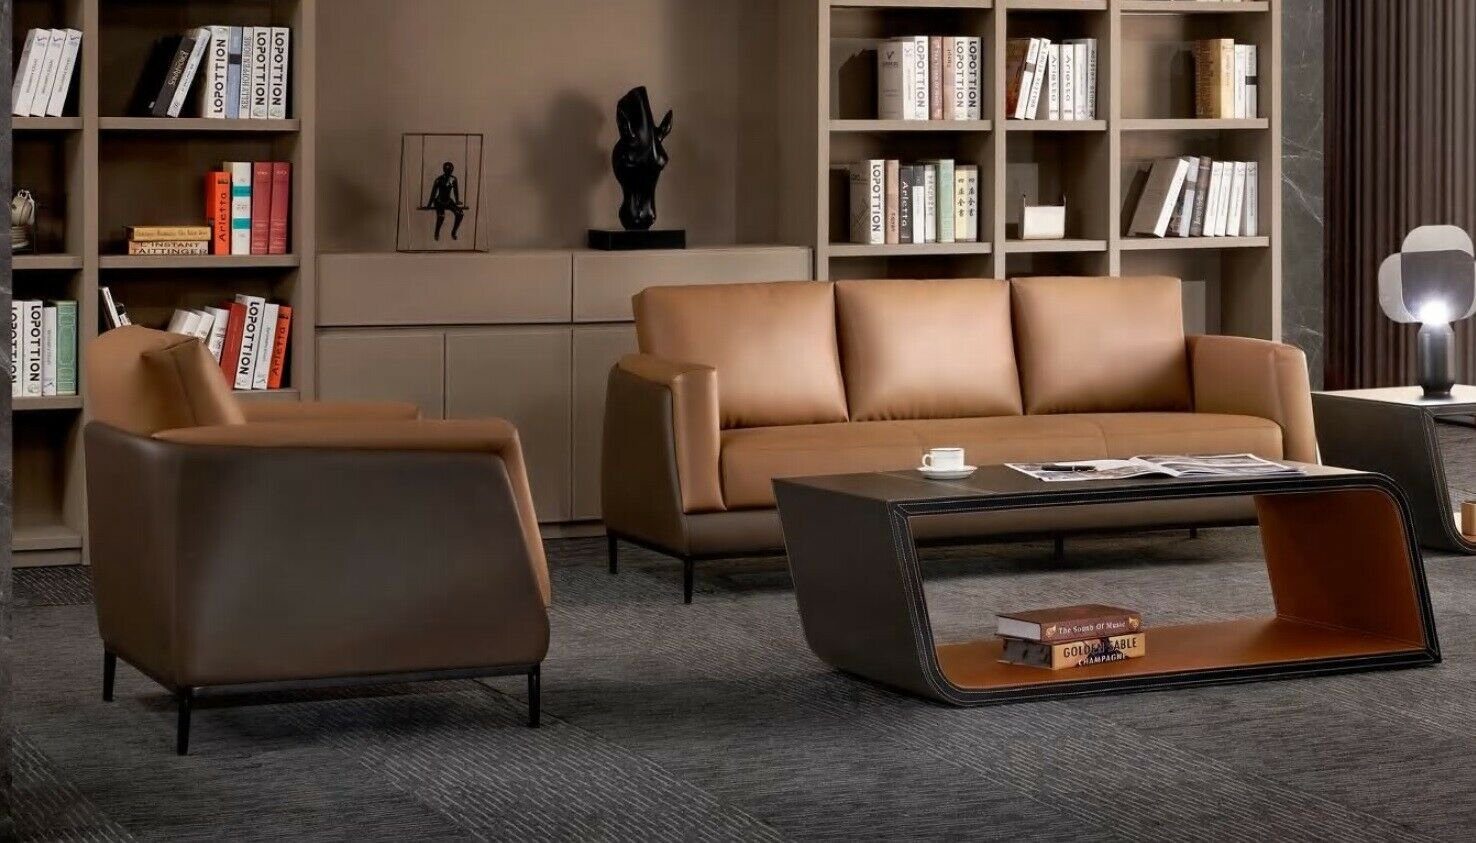 JVmoebel Sofa Luxus Brauner Dreisitzer Büromöbel 3-Sitzer Sofa Einrichtung Neu, Made in Europe